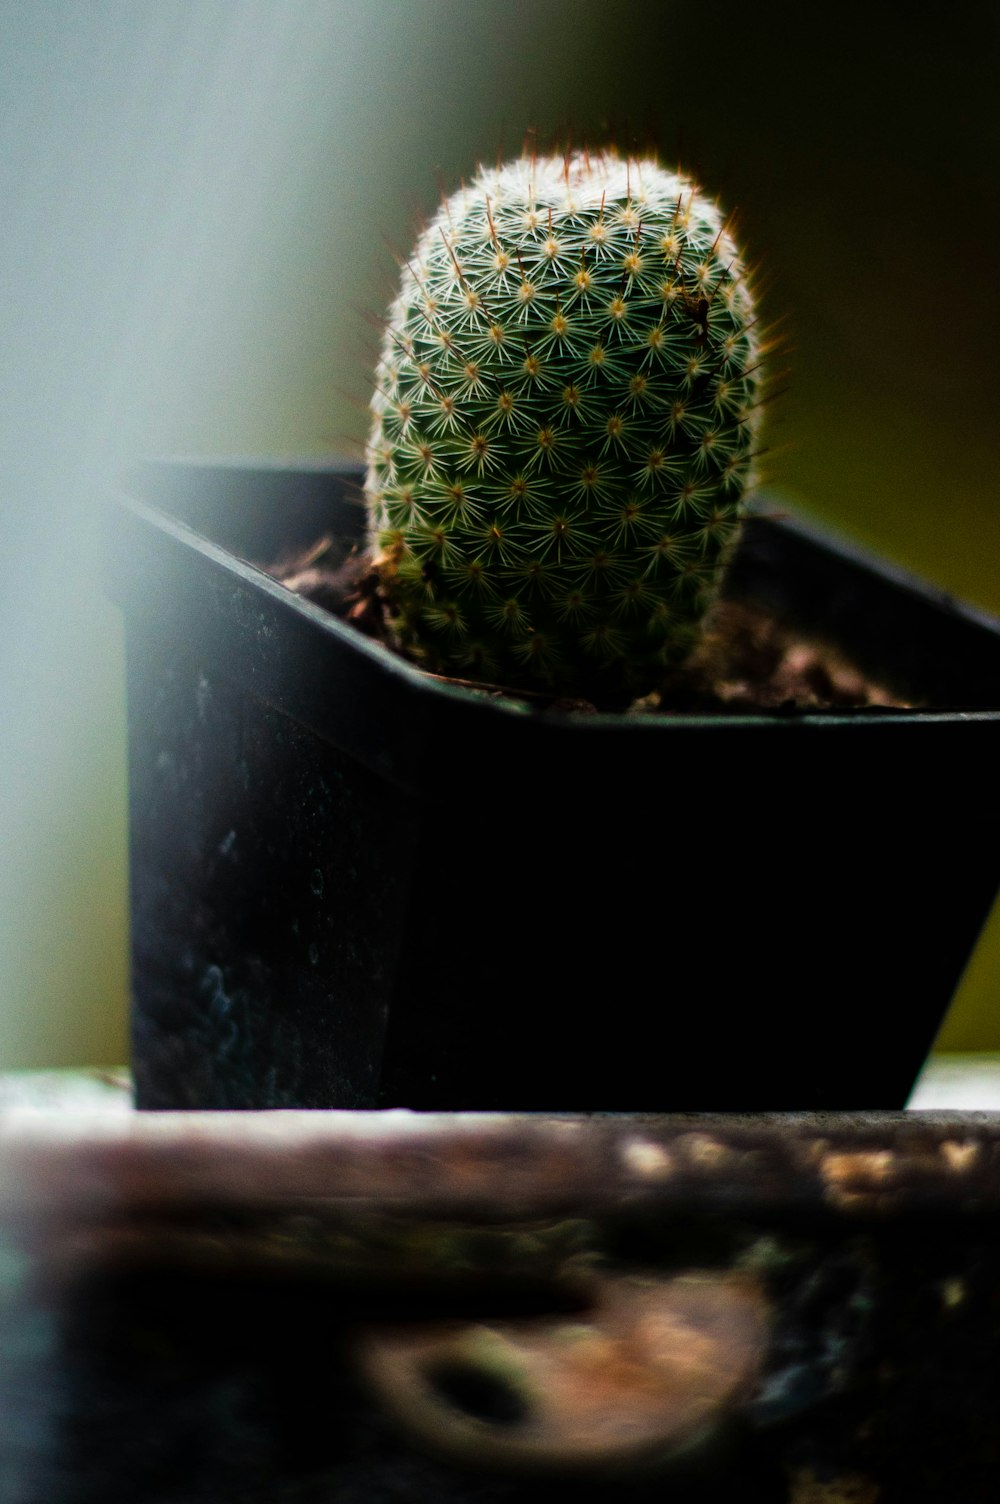 a cactus in a pot